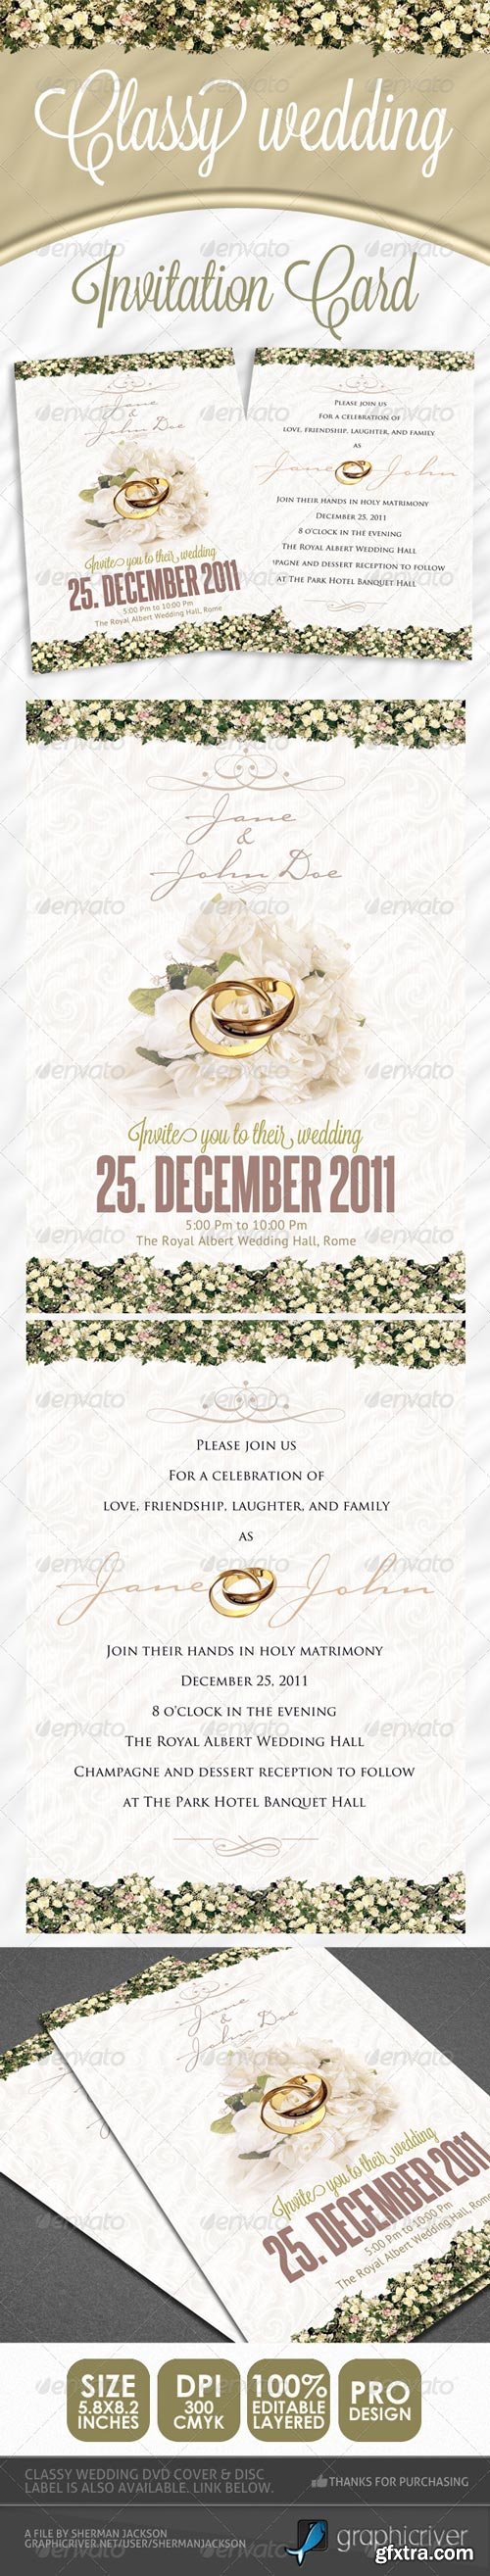 GraphicRiver - Classy Wedding Invitations - 1130154